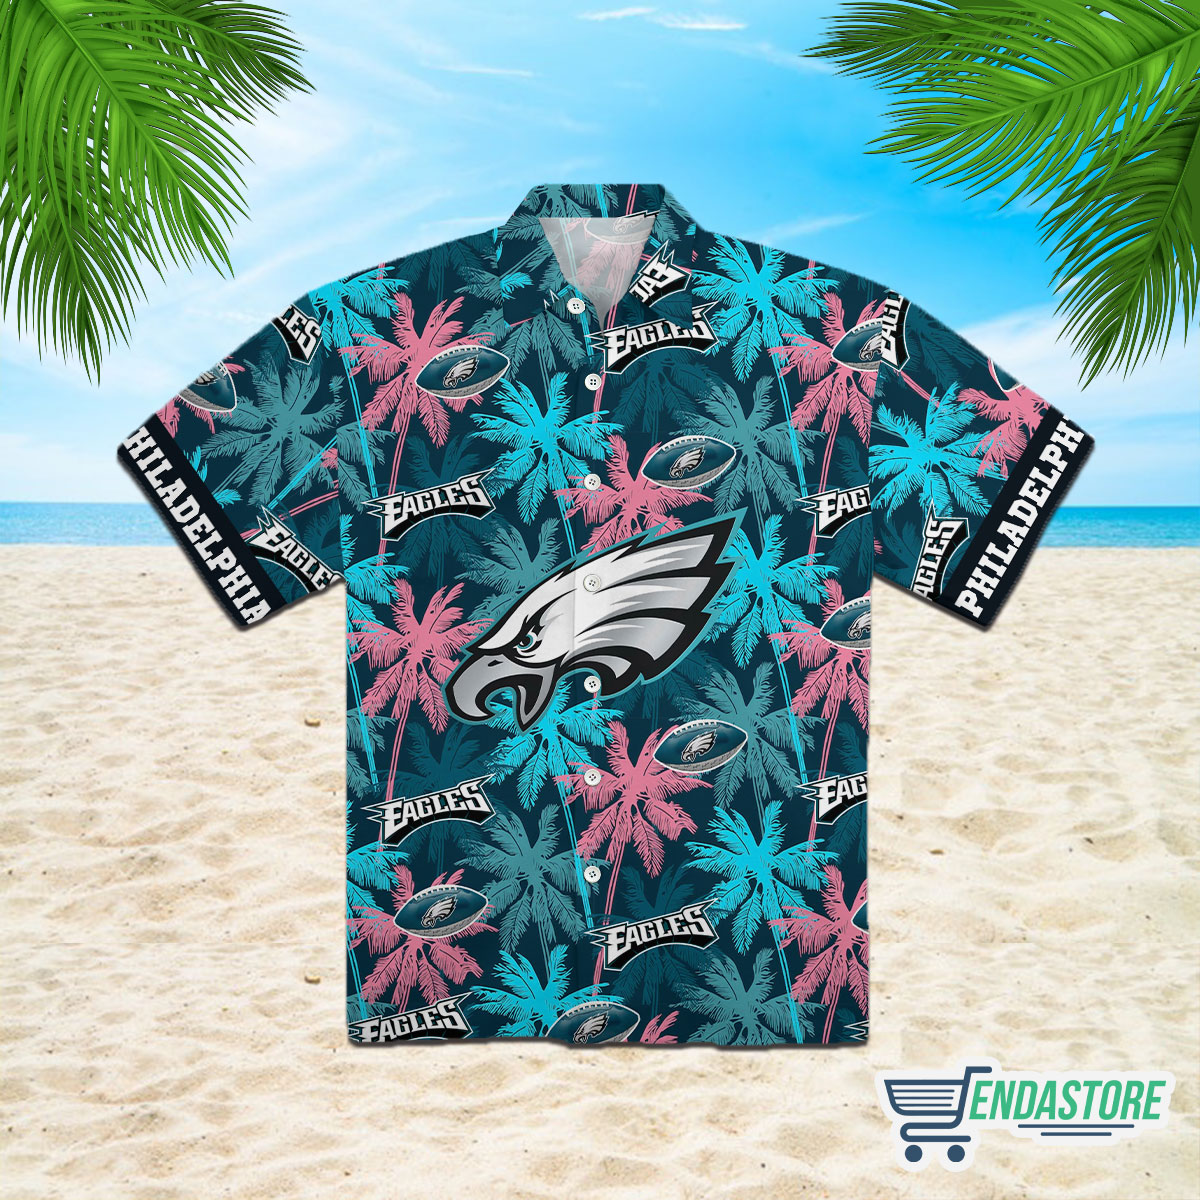 Endastore Philadelphia Eagles Hawaiian Shirt